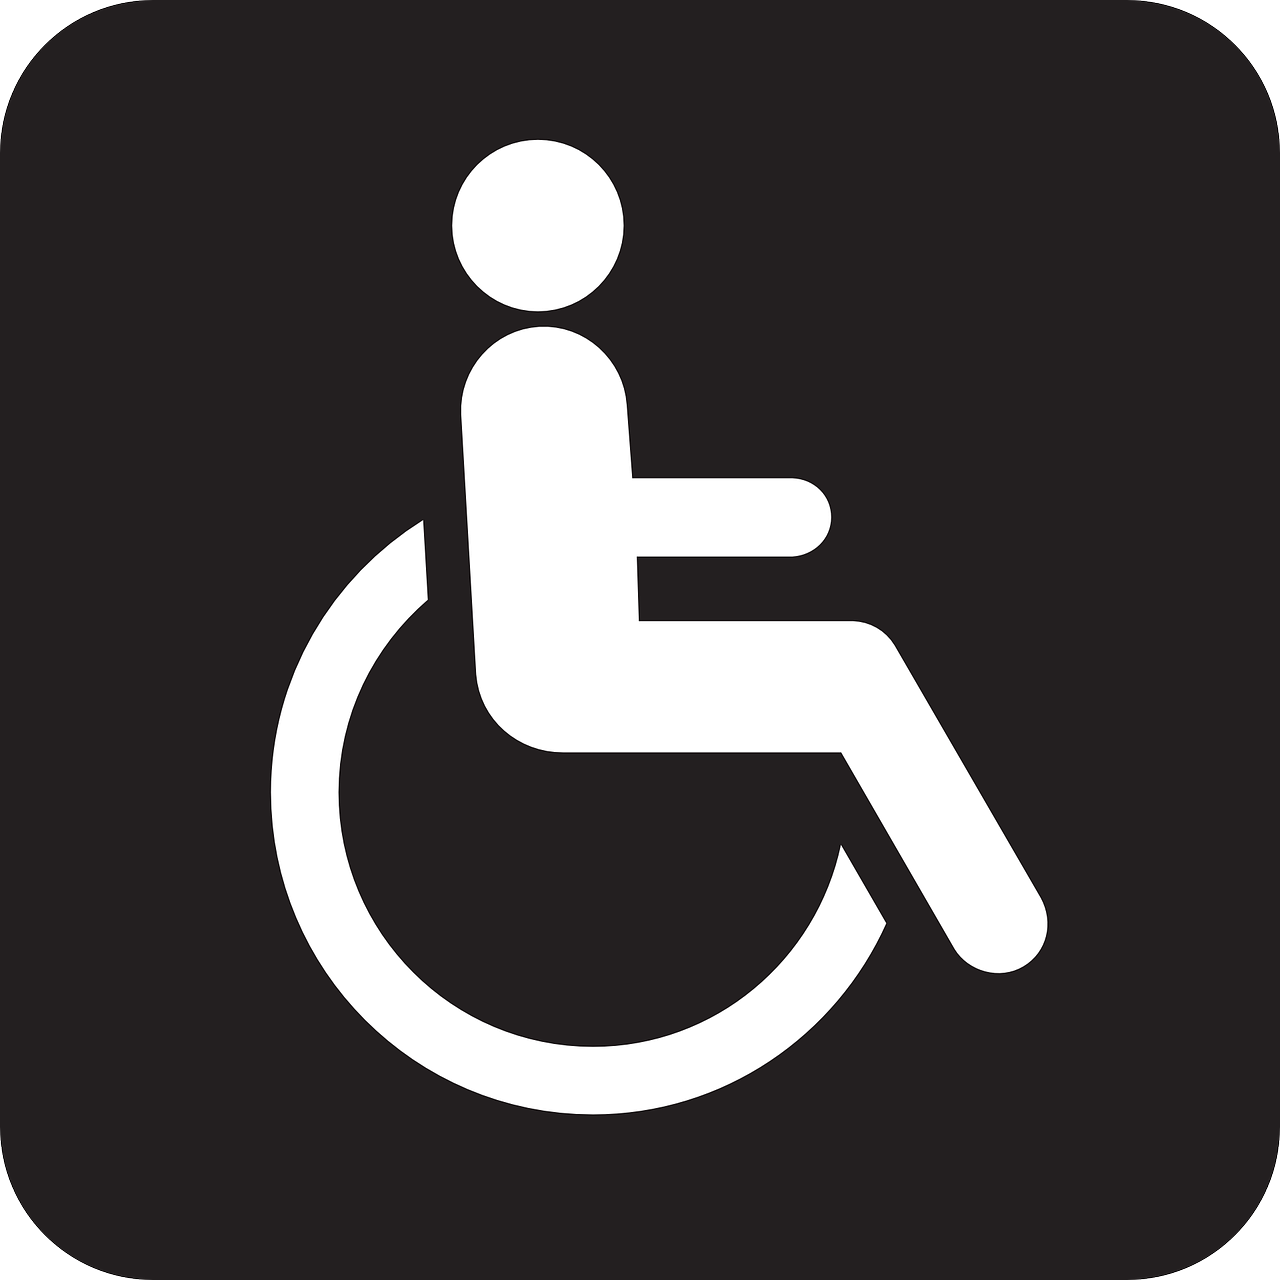 SIG Winkel De Rijp instelling gehandicaptenzorg verstandelijk gehandicapten beoordeling